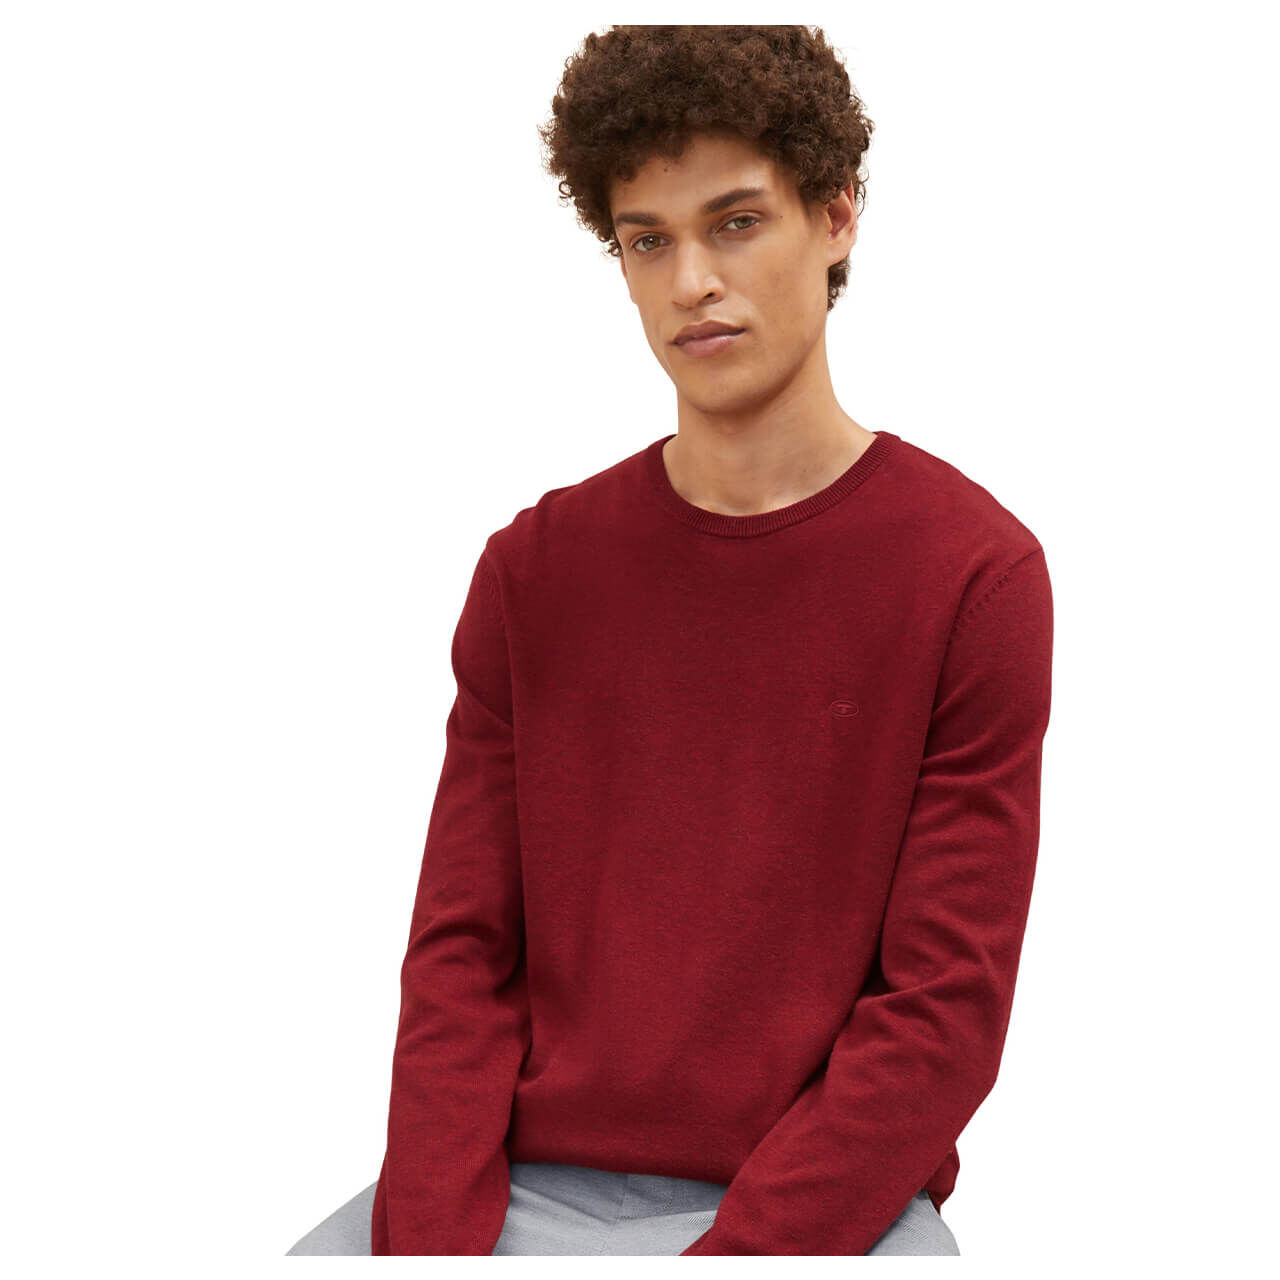 Tom Tailor Herren Basic Crew-neck Pullover burgundy melange